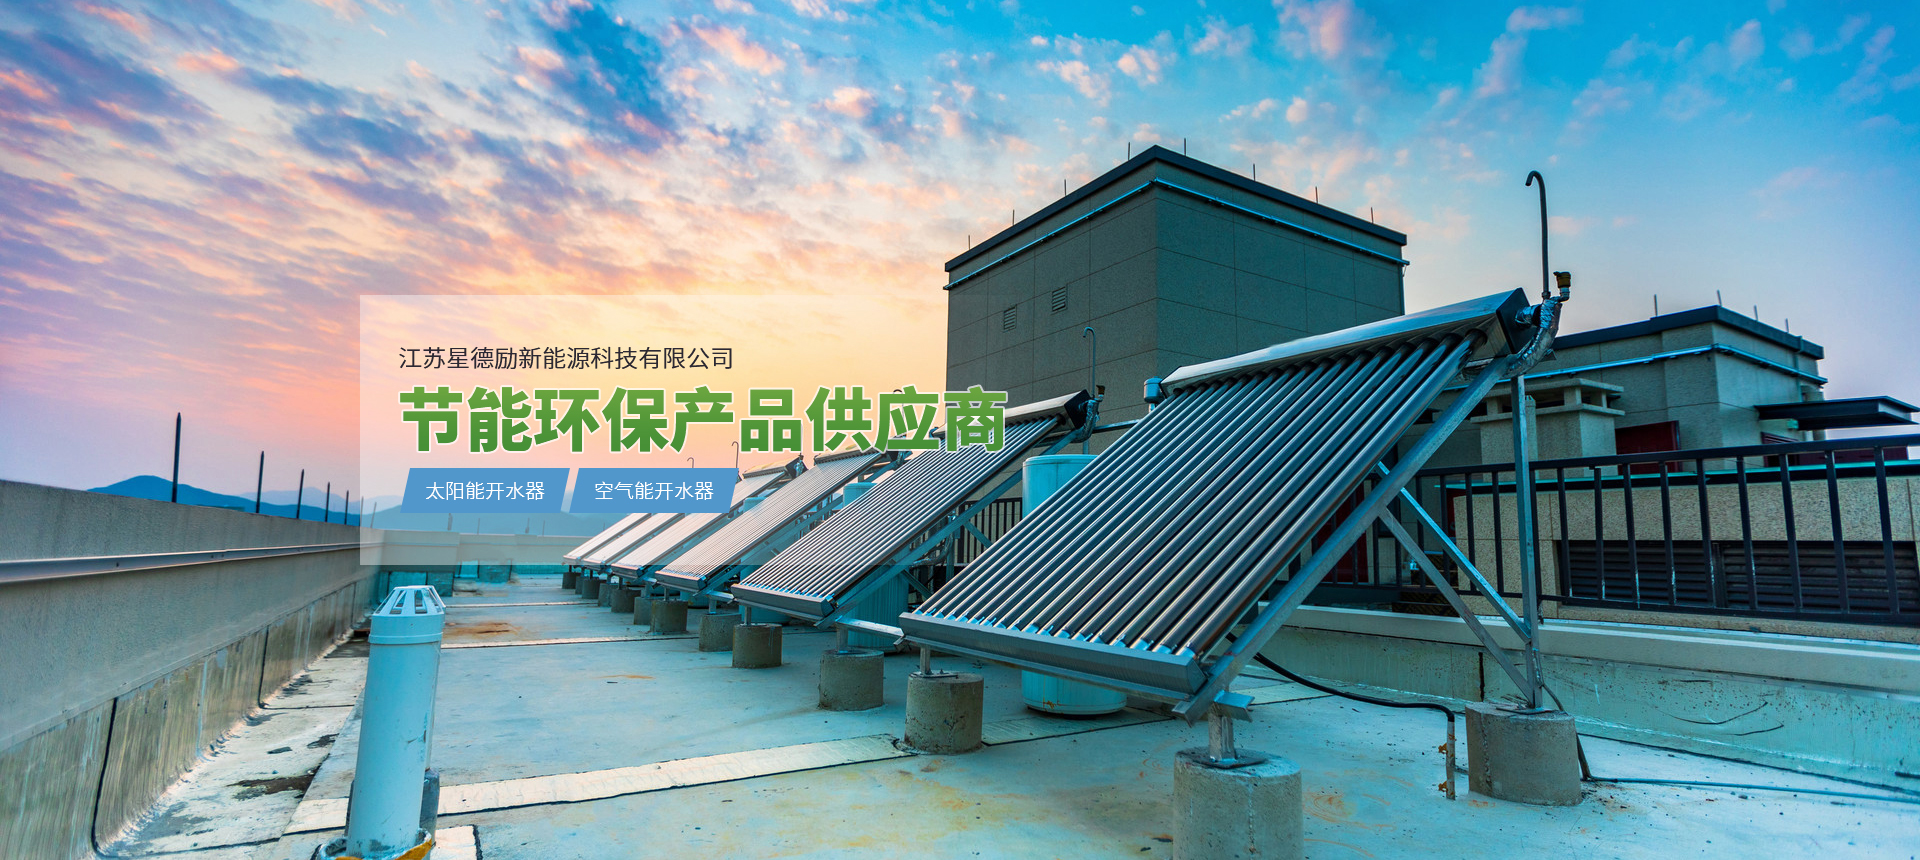 江苏星德励新能源科技有限公司